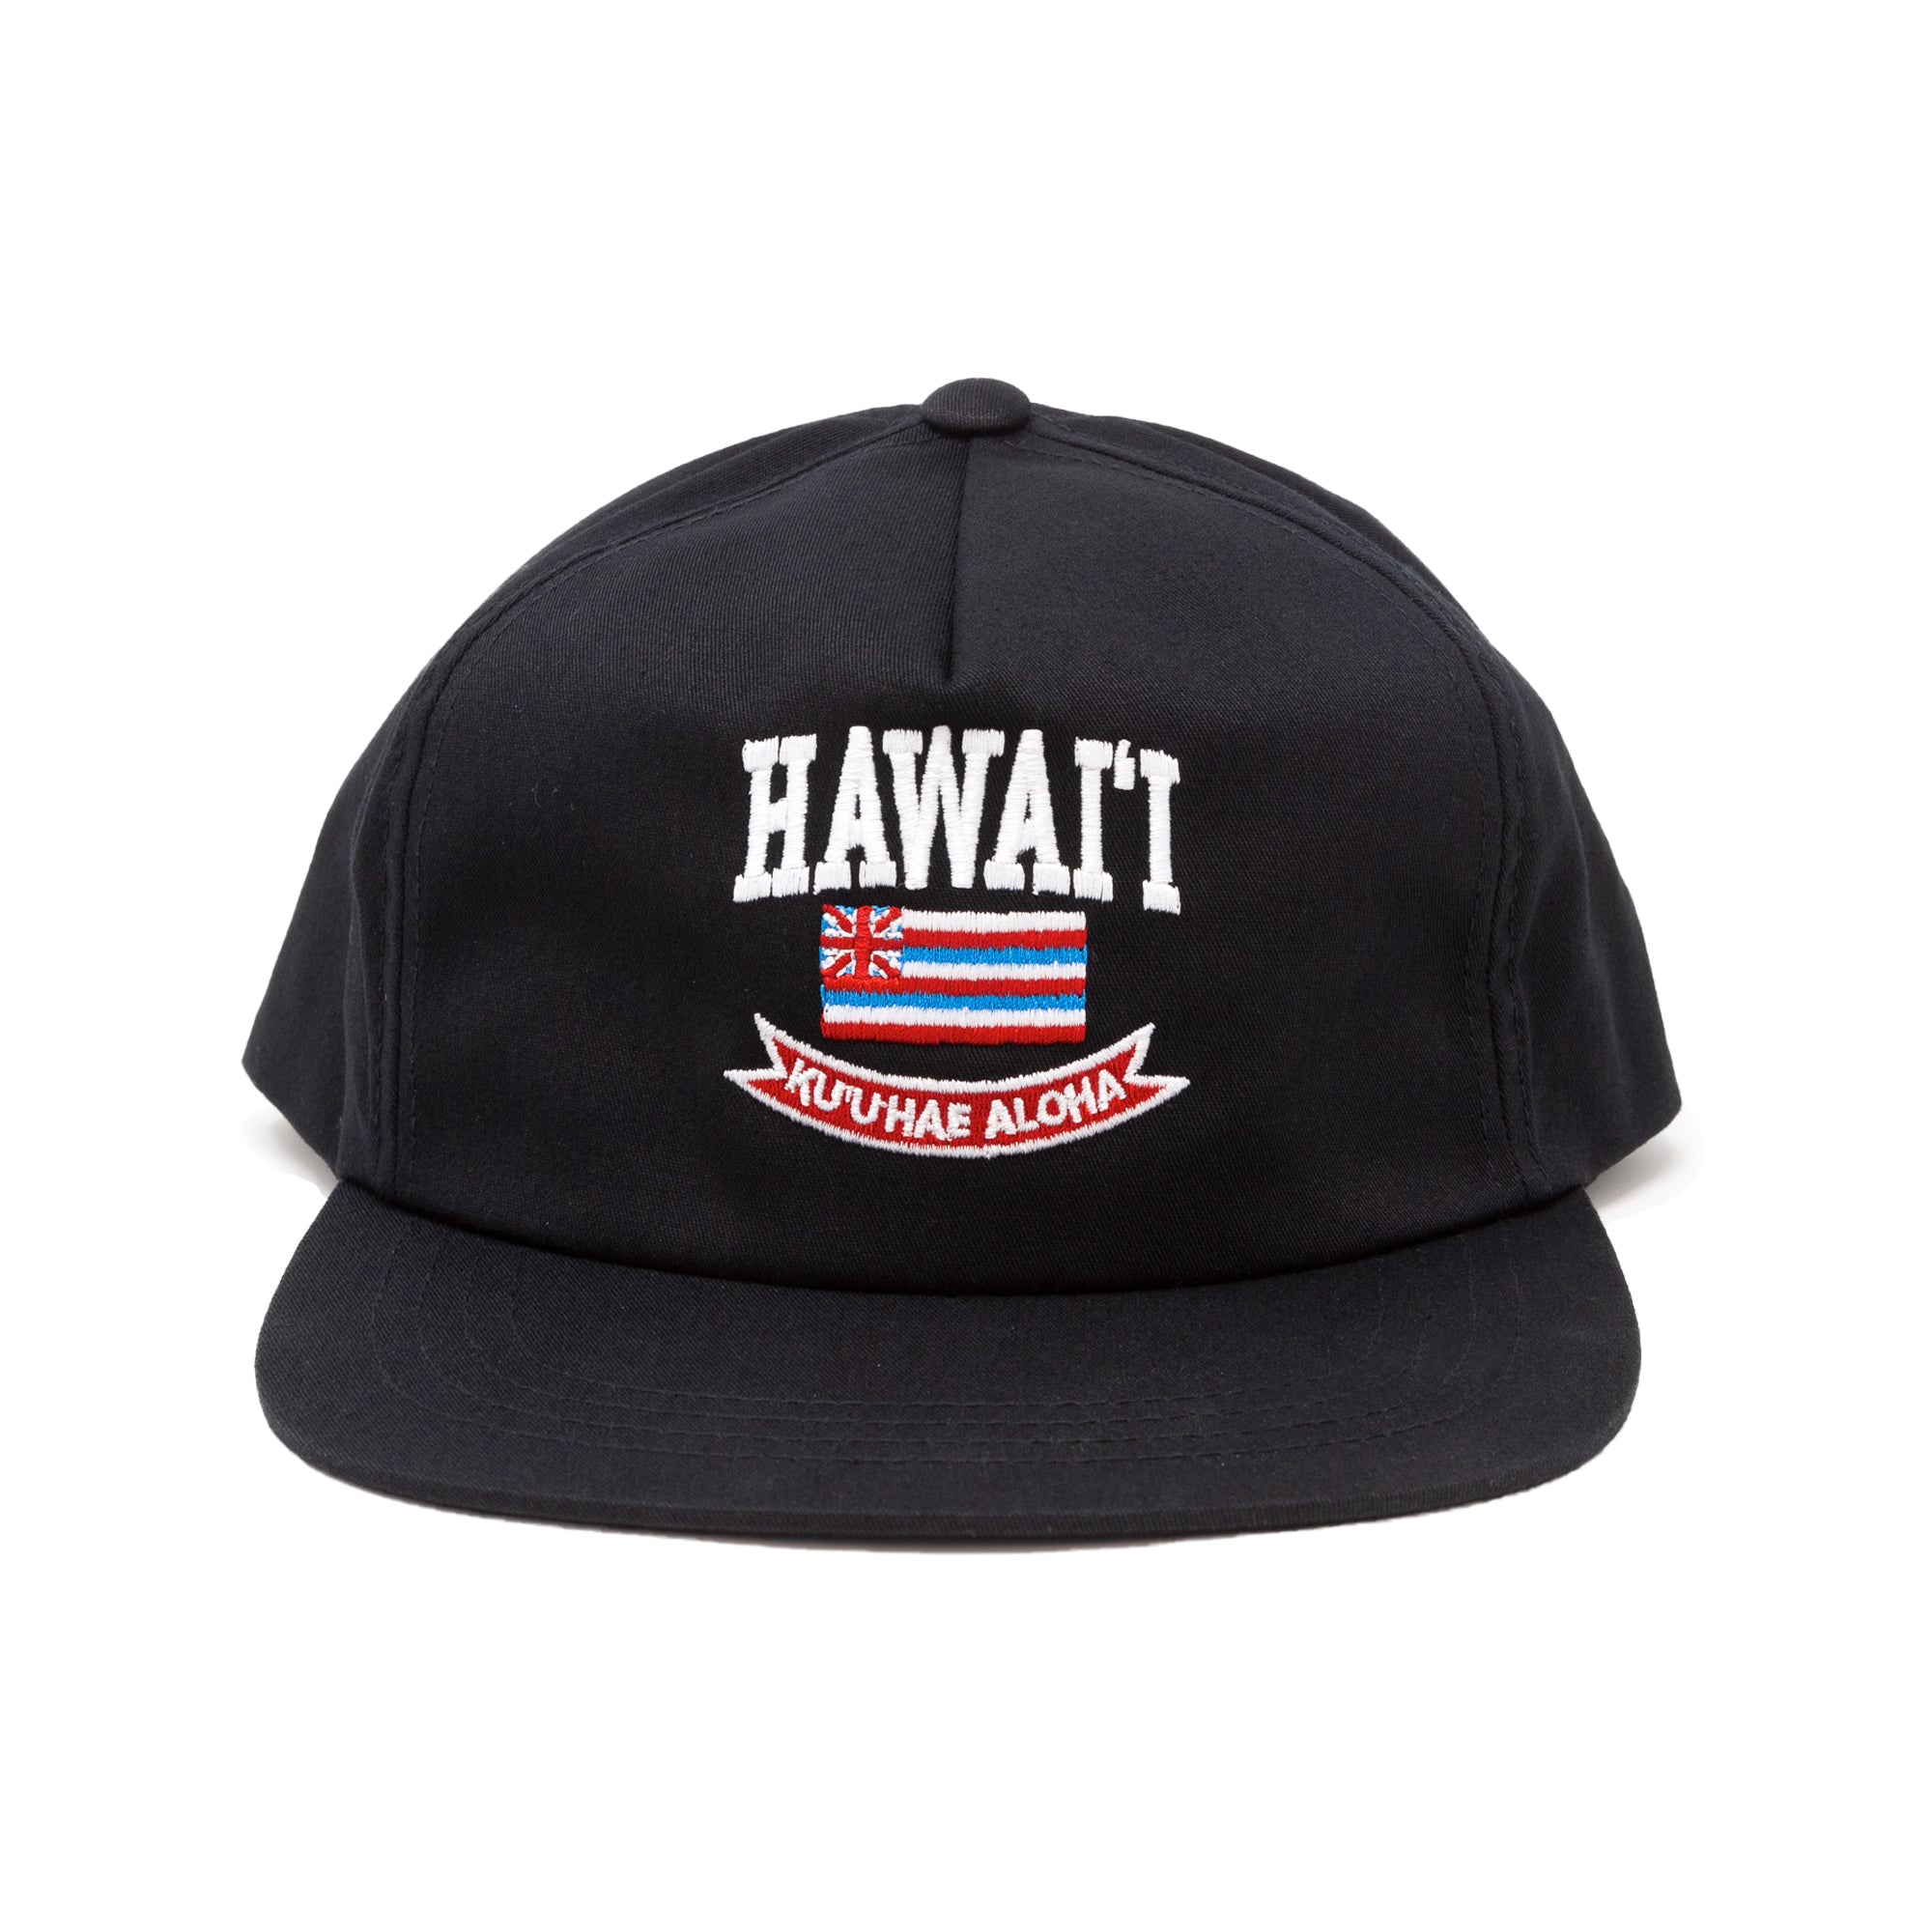 KUU HAE ALOHA Snapback Hat - Black